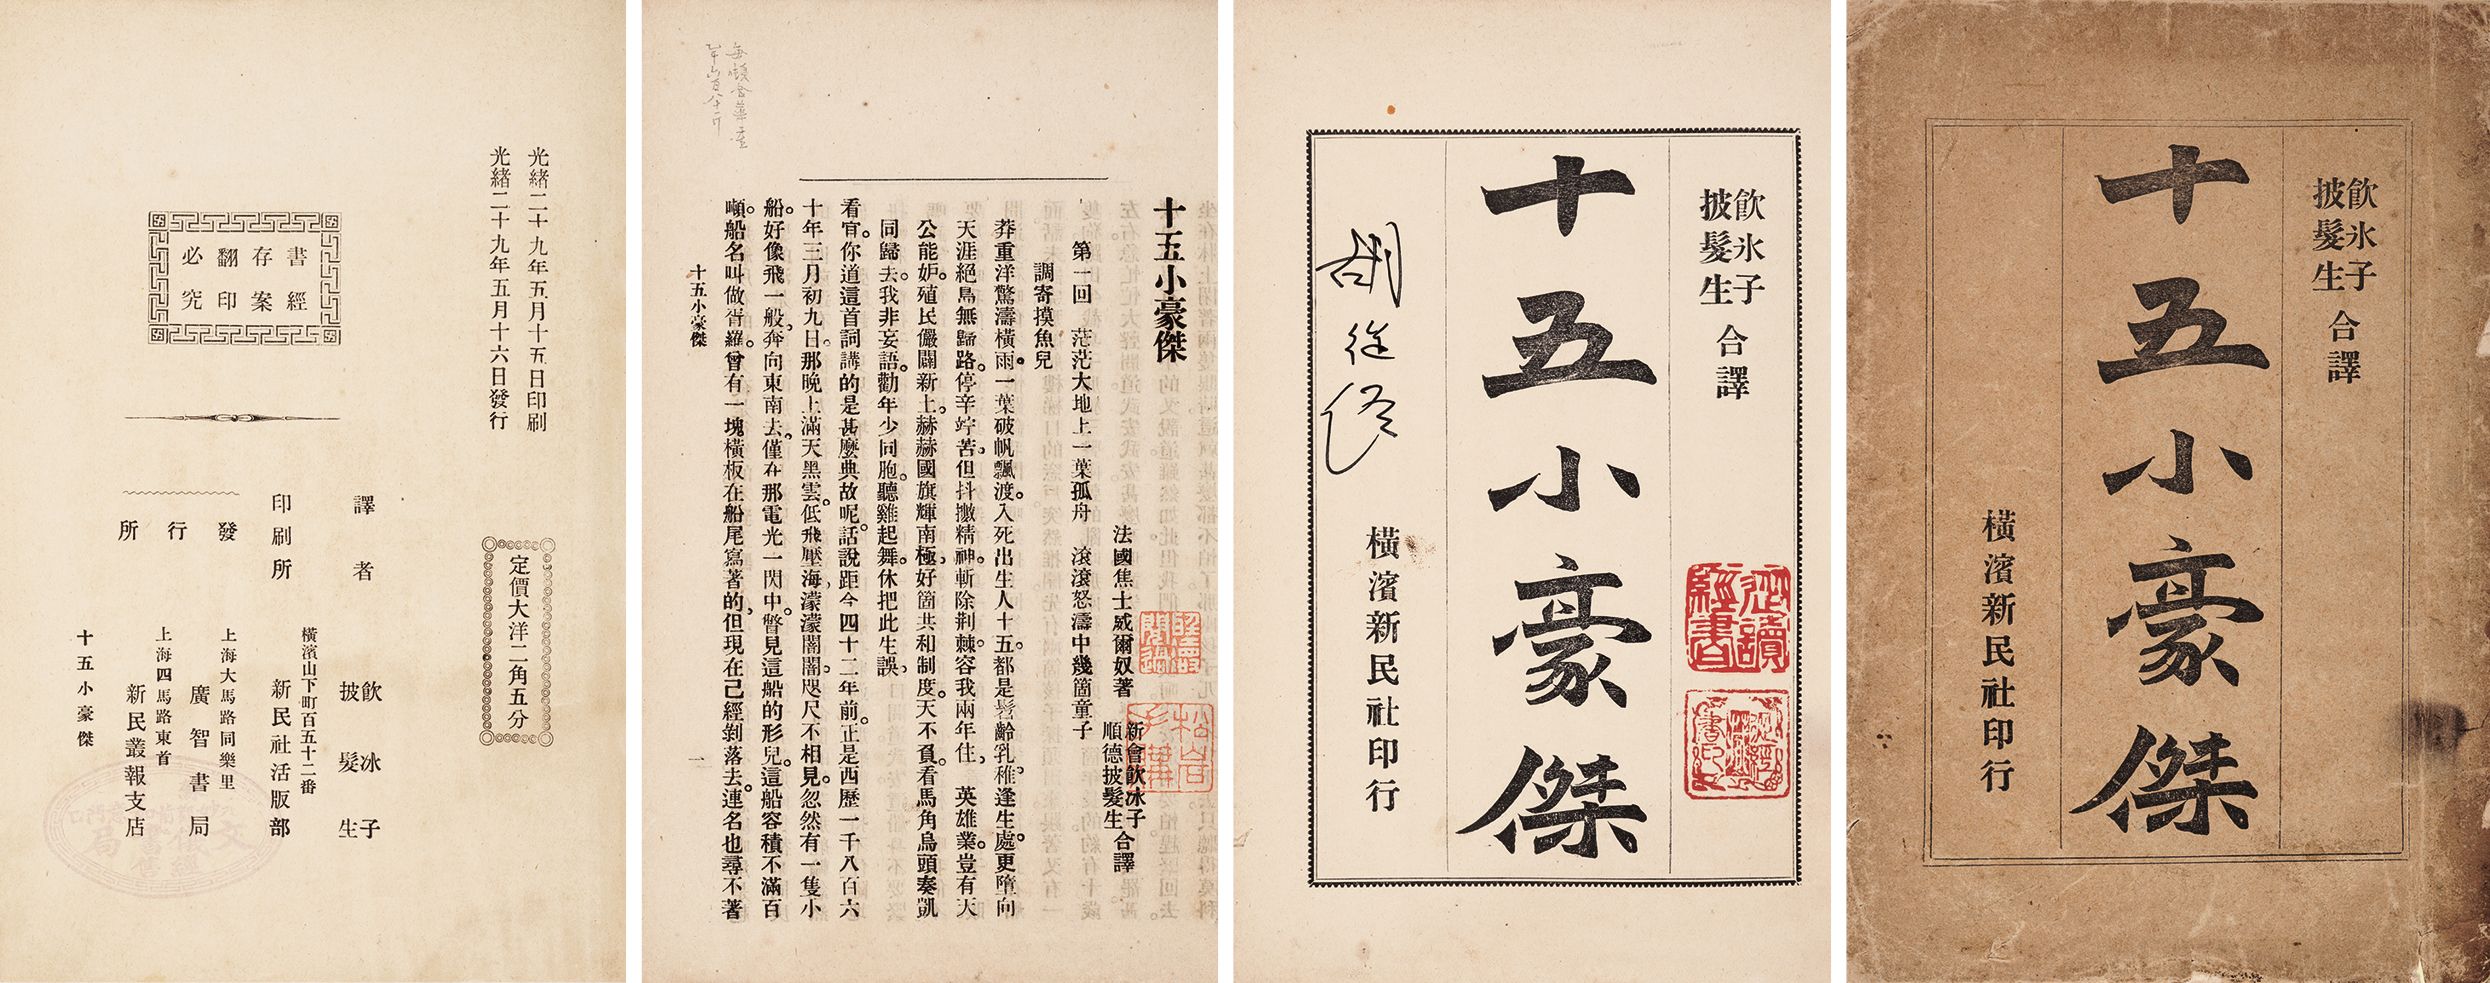 十五小豪杰 清光绪二十九年（1903）横滨新民社出版